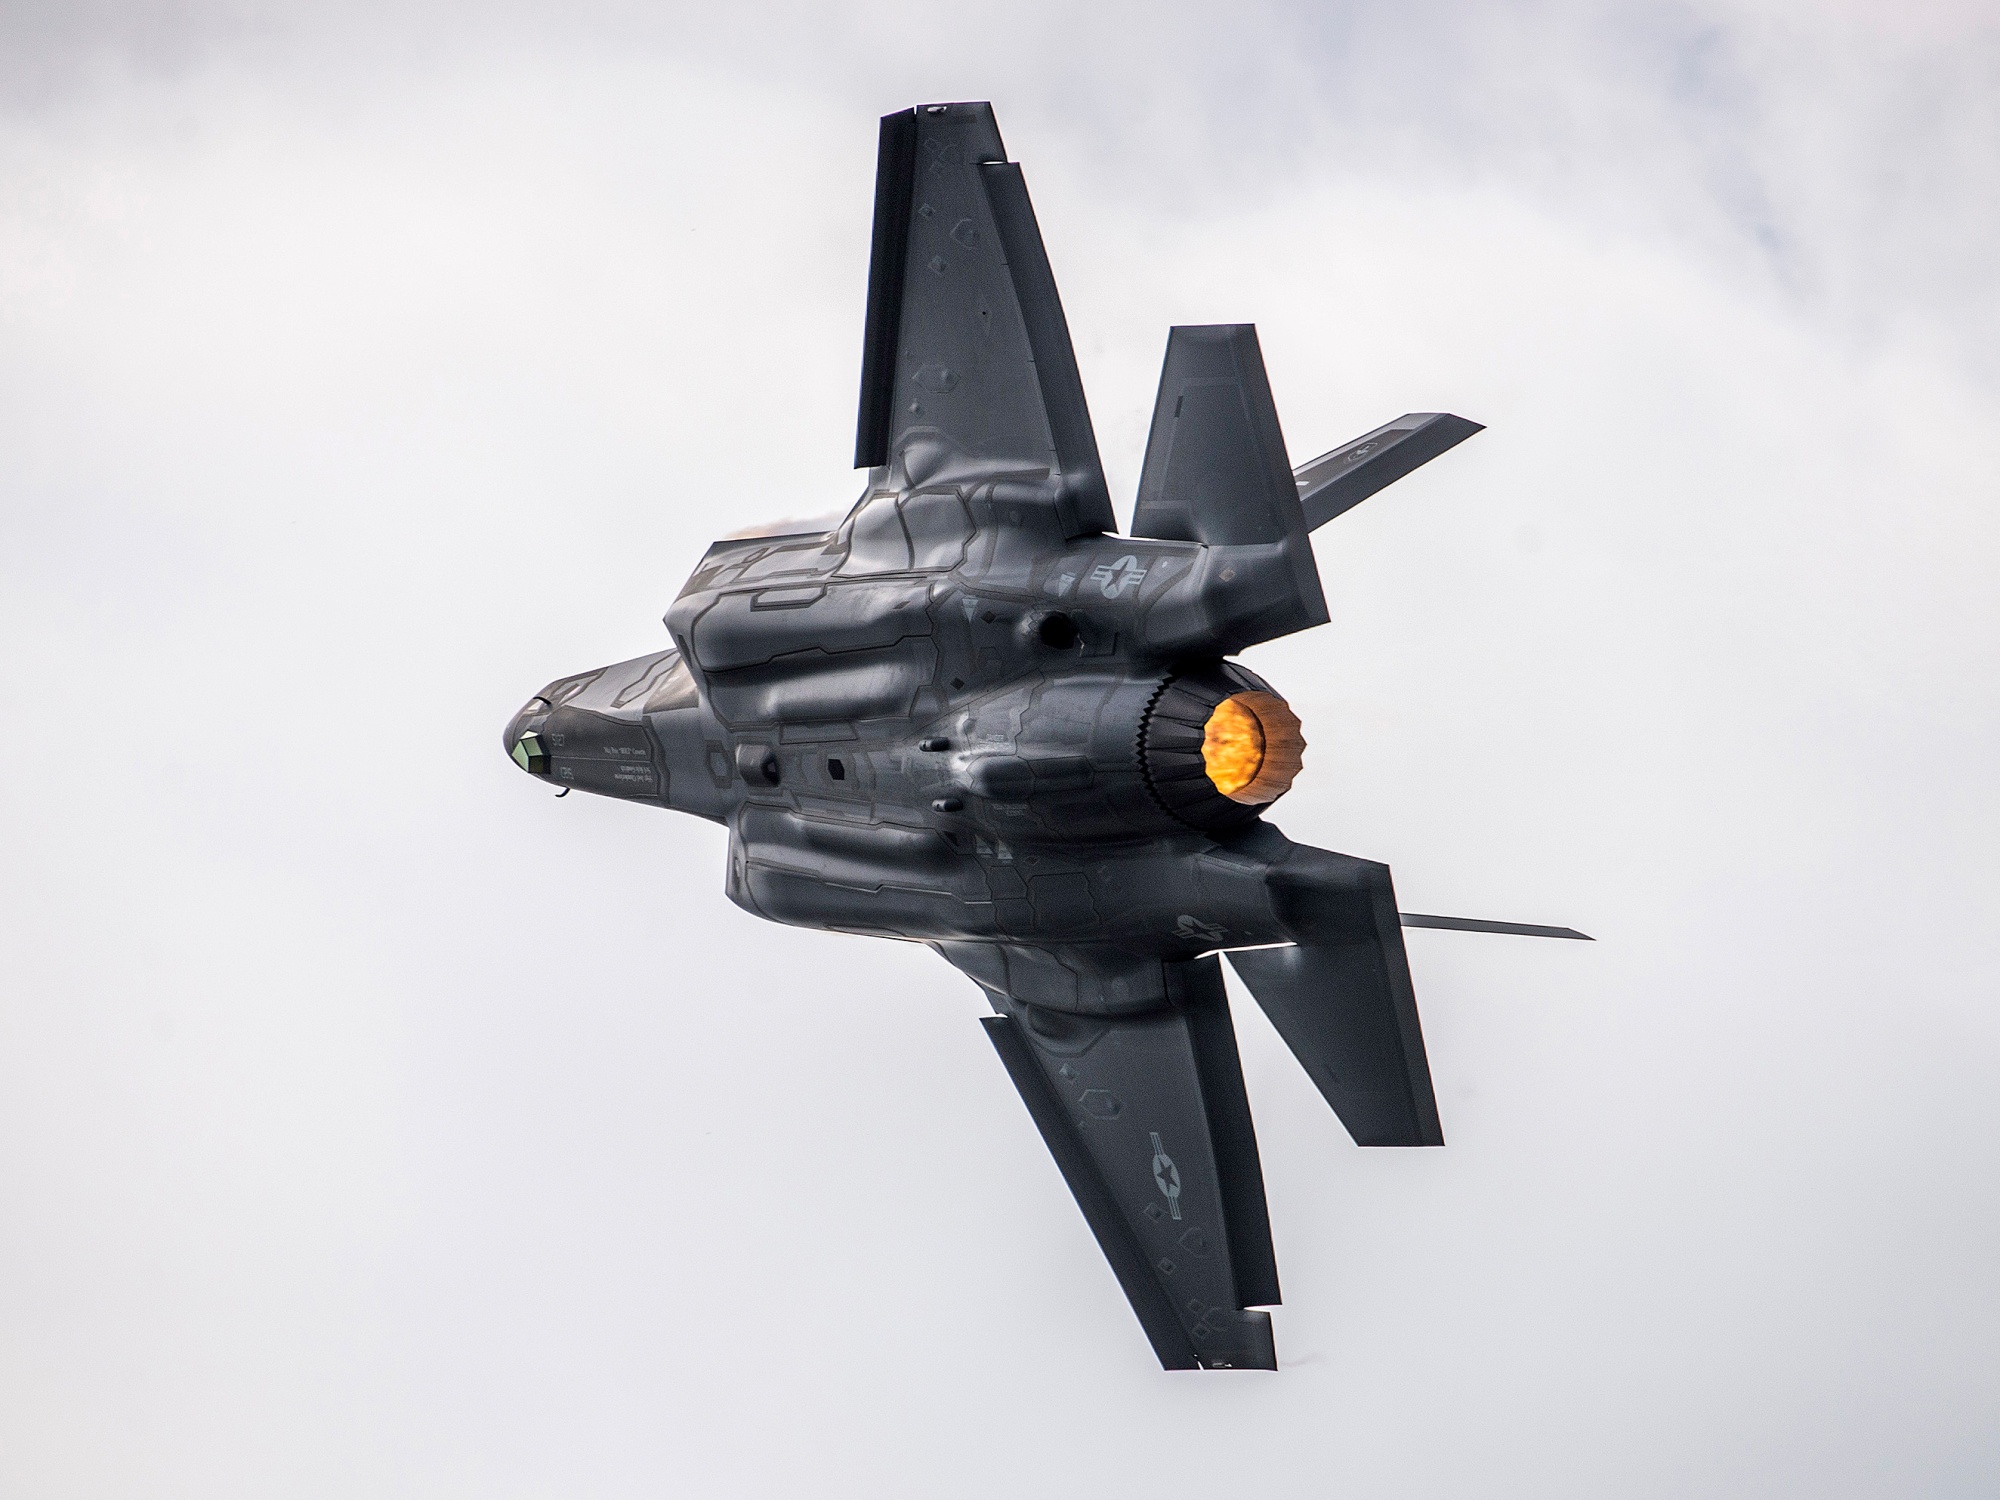 El Pentágono quiere motores Pratt & Whitney F135 mejorados para los cazas de quinta generación F-35 Lightning II en 2030